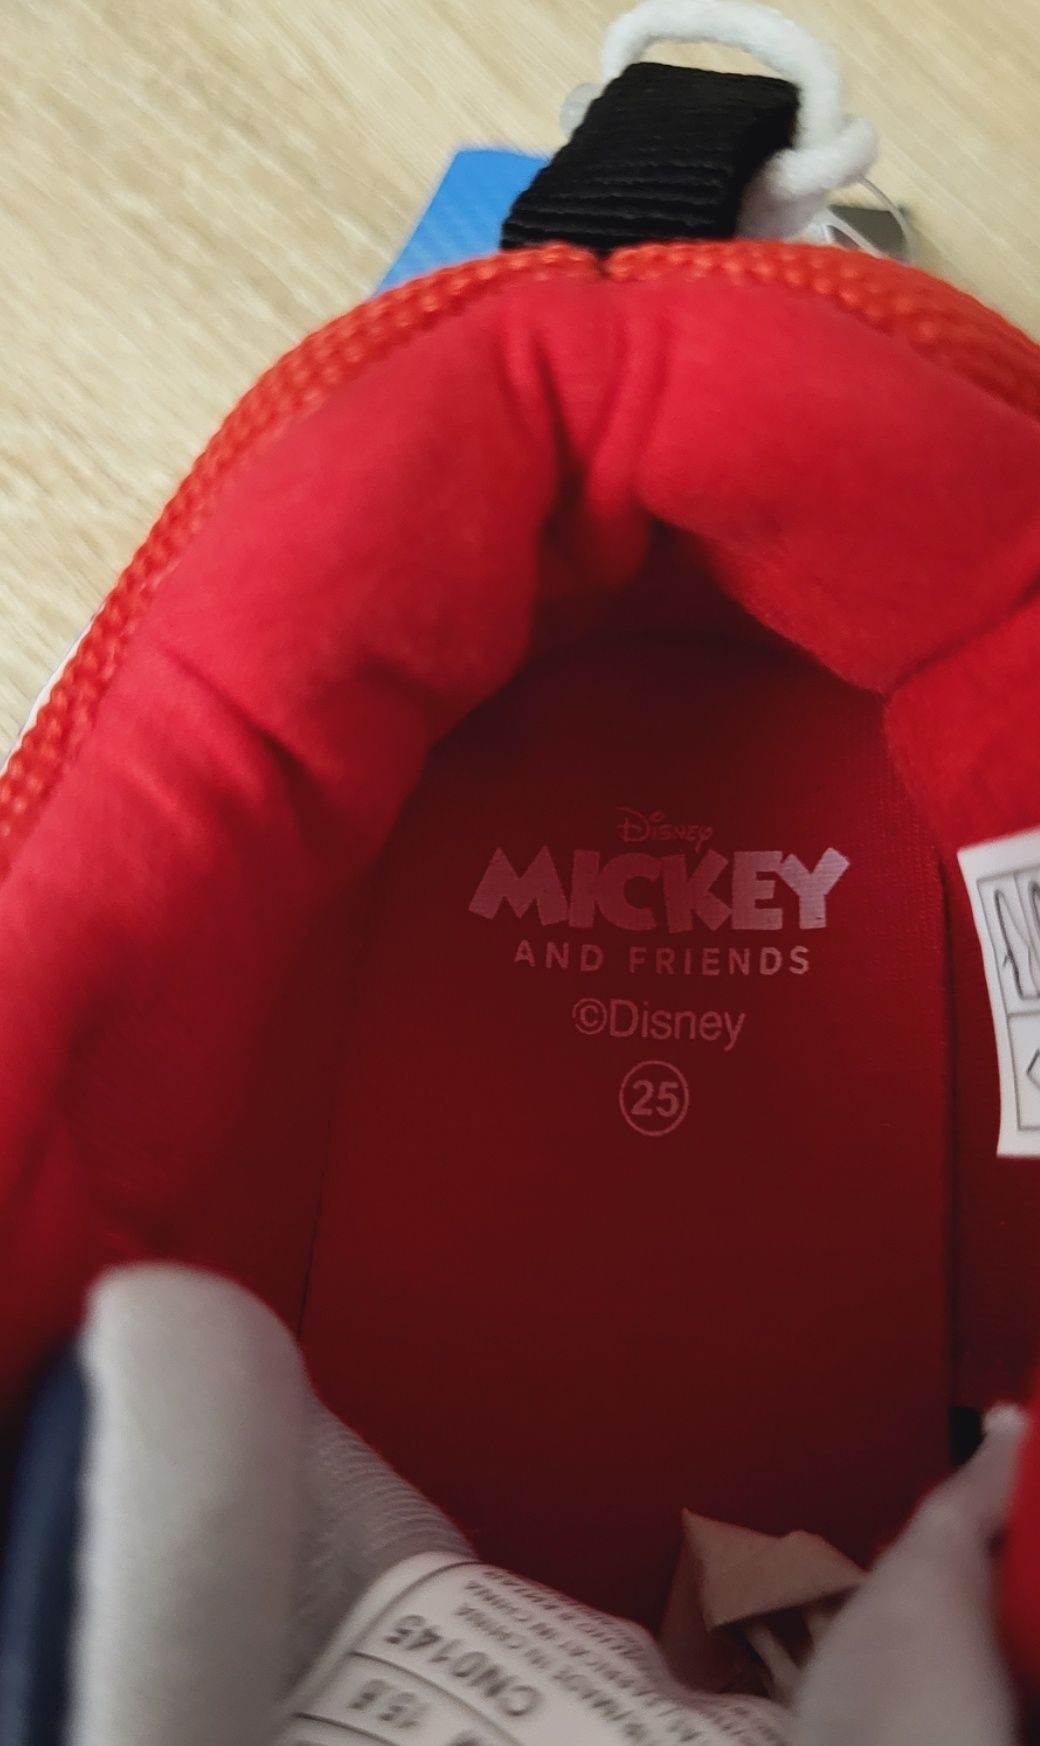 Pantofi sport Disney licenta Mickei Mouse marimea 25